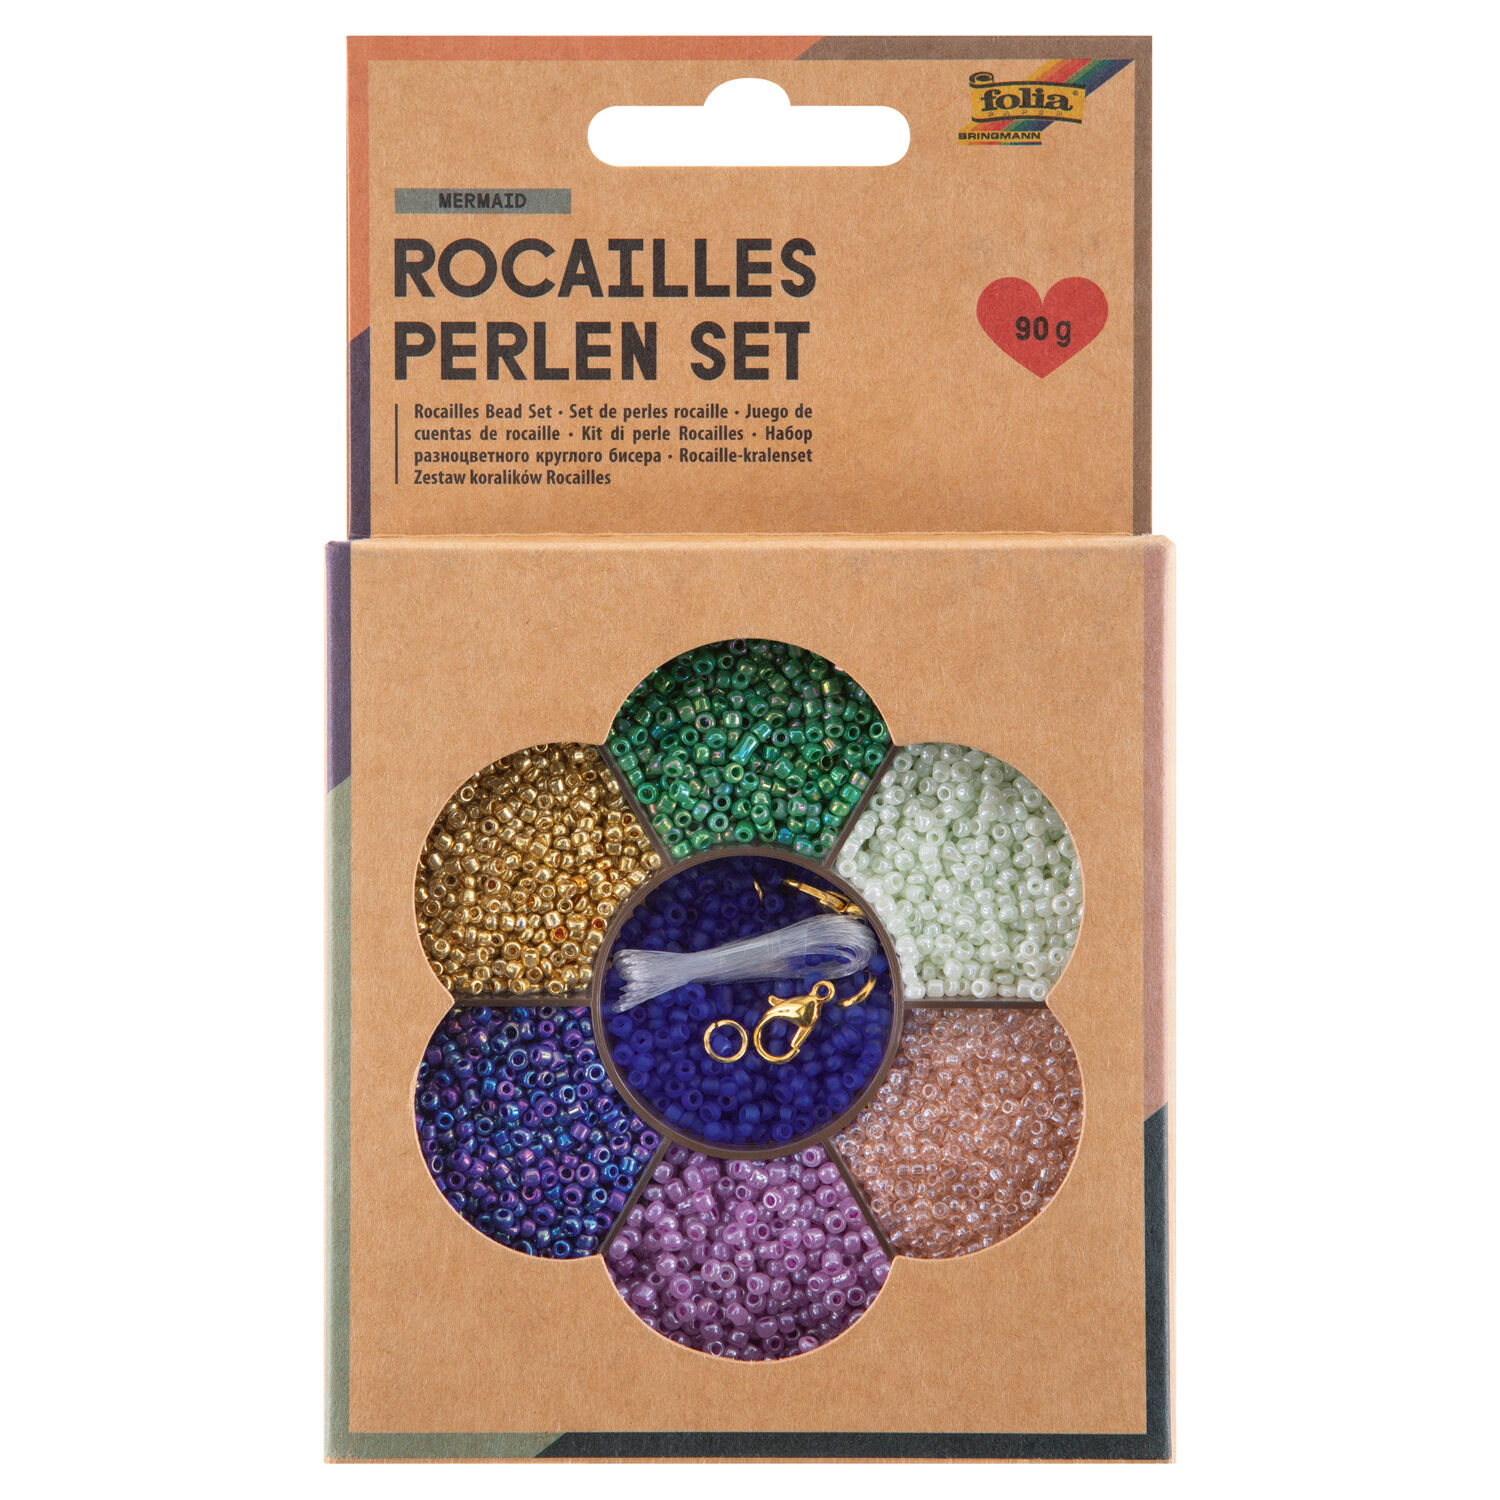 NEU Rocailles-Perlen-Set Meerjungfrau, inkl. 90g Perlen, 3x1m Nylonfaden, 3 Verschlsse